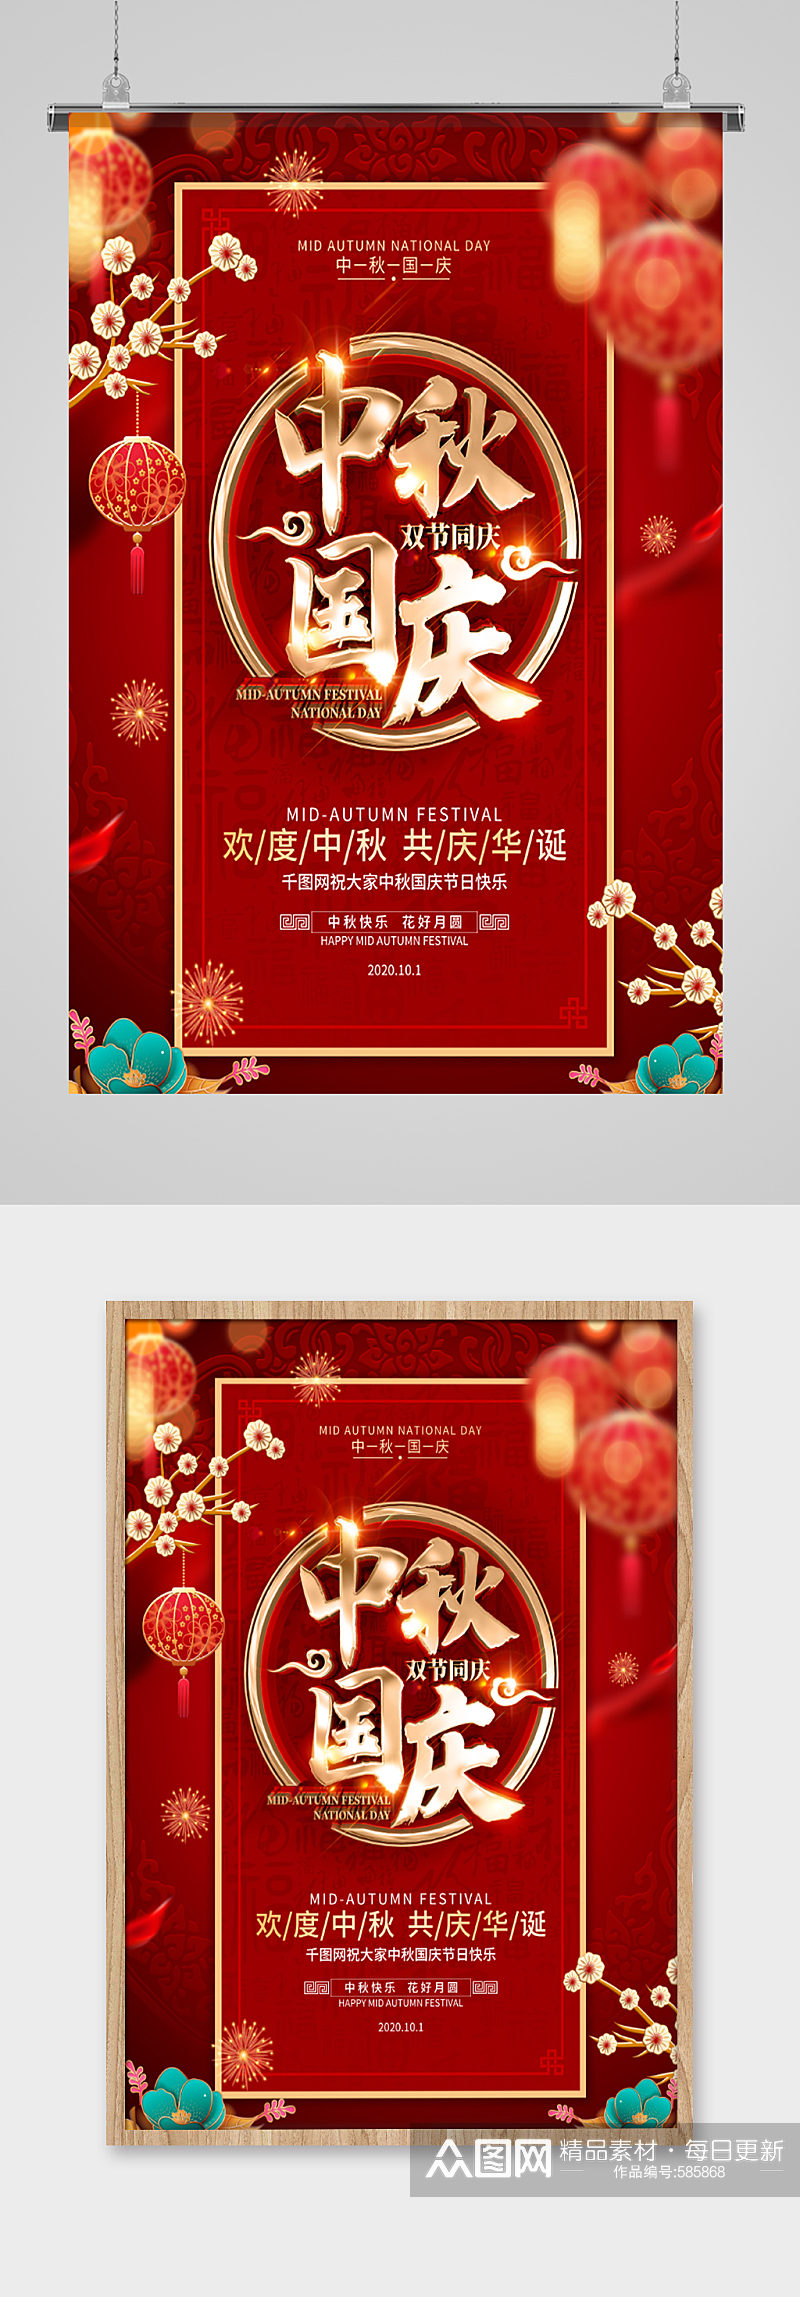 中秋国庆双节同庆中式传统节日海报素材